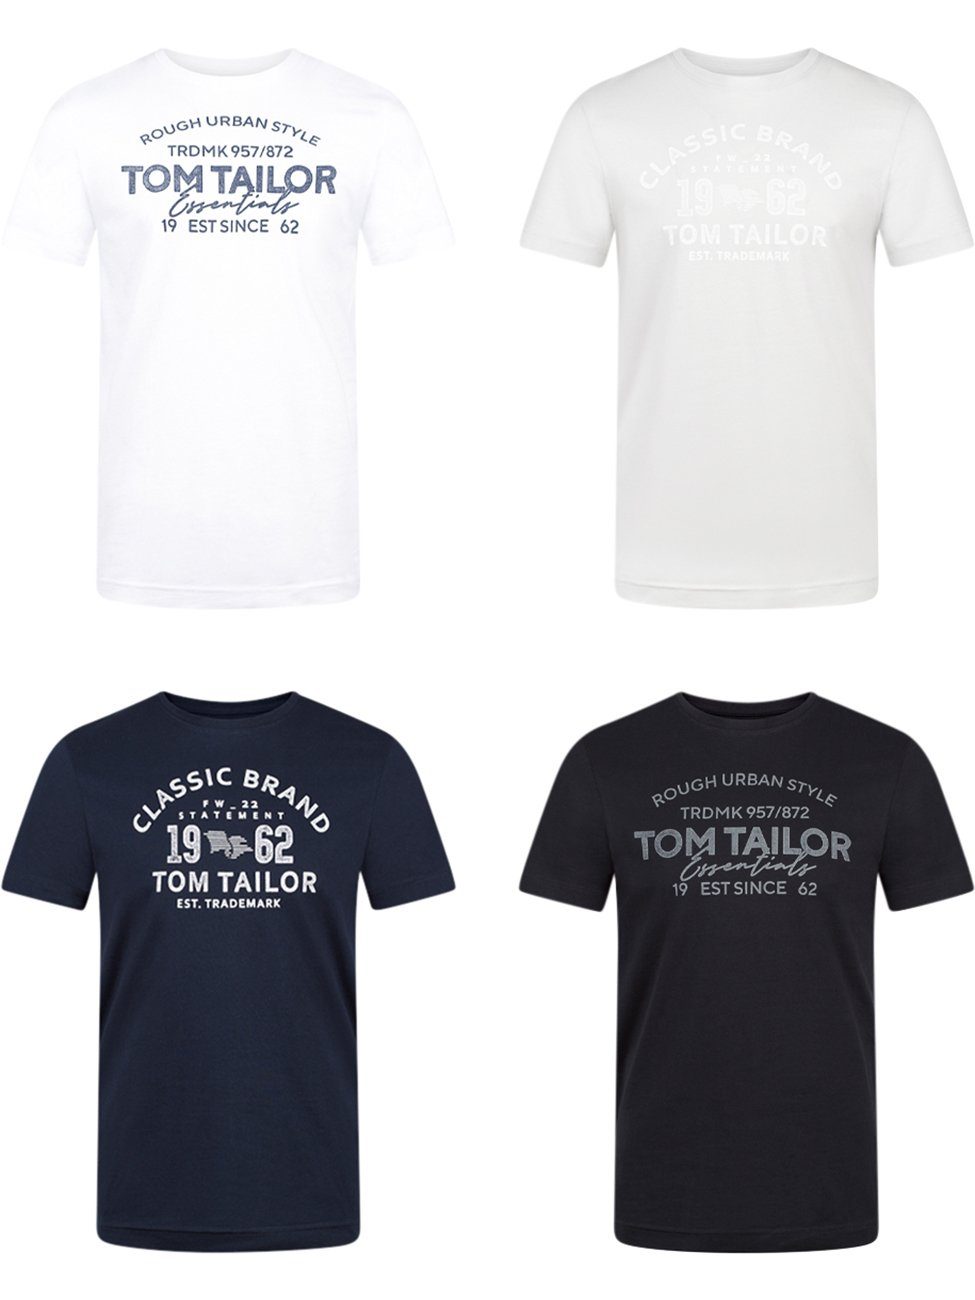 TOM TAILOR T-Shirt Herren Printshirt Regular Fit (4-tlg) Kurzarm Tee Shirt mit Rundhalsausschnitt aus 100% Baumwolle